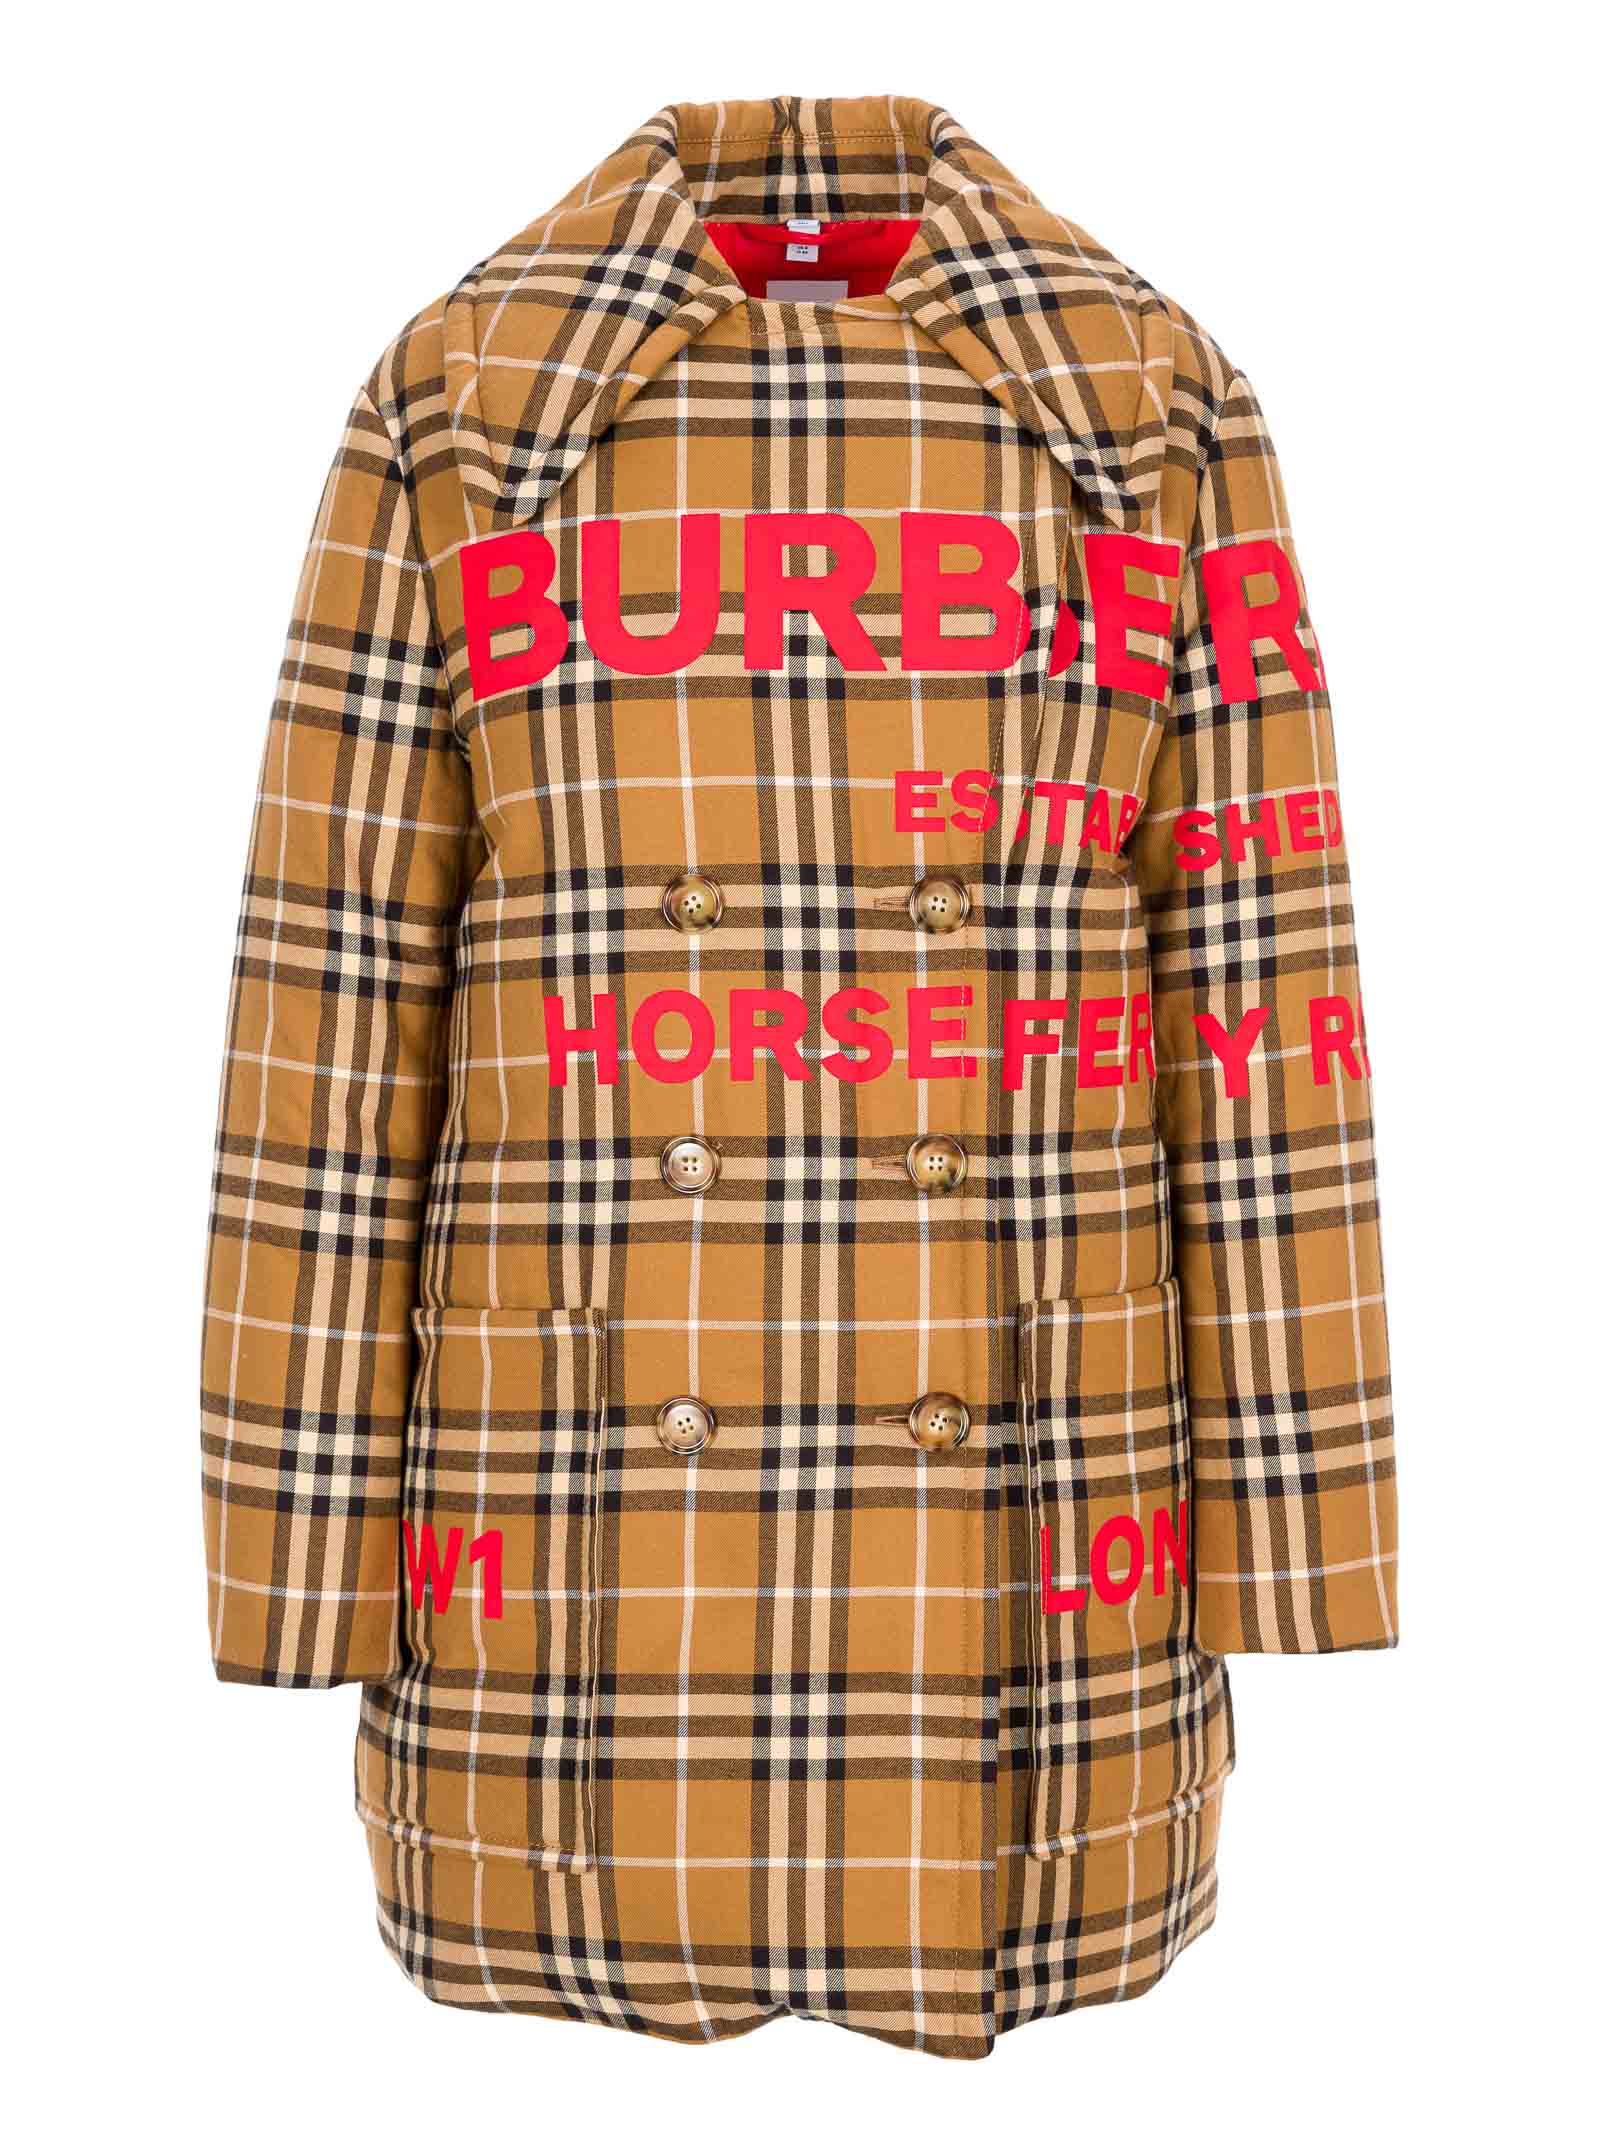 burberry print jacket